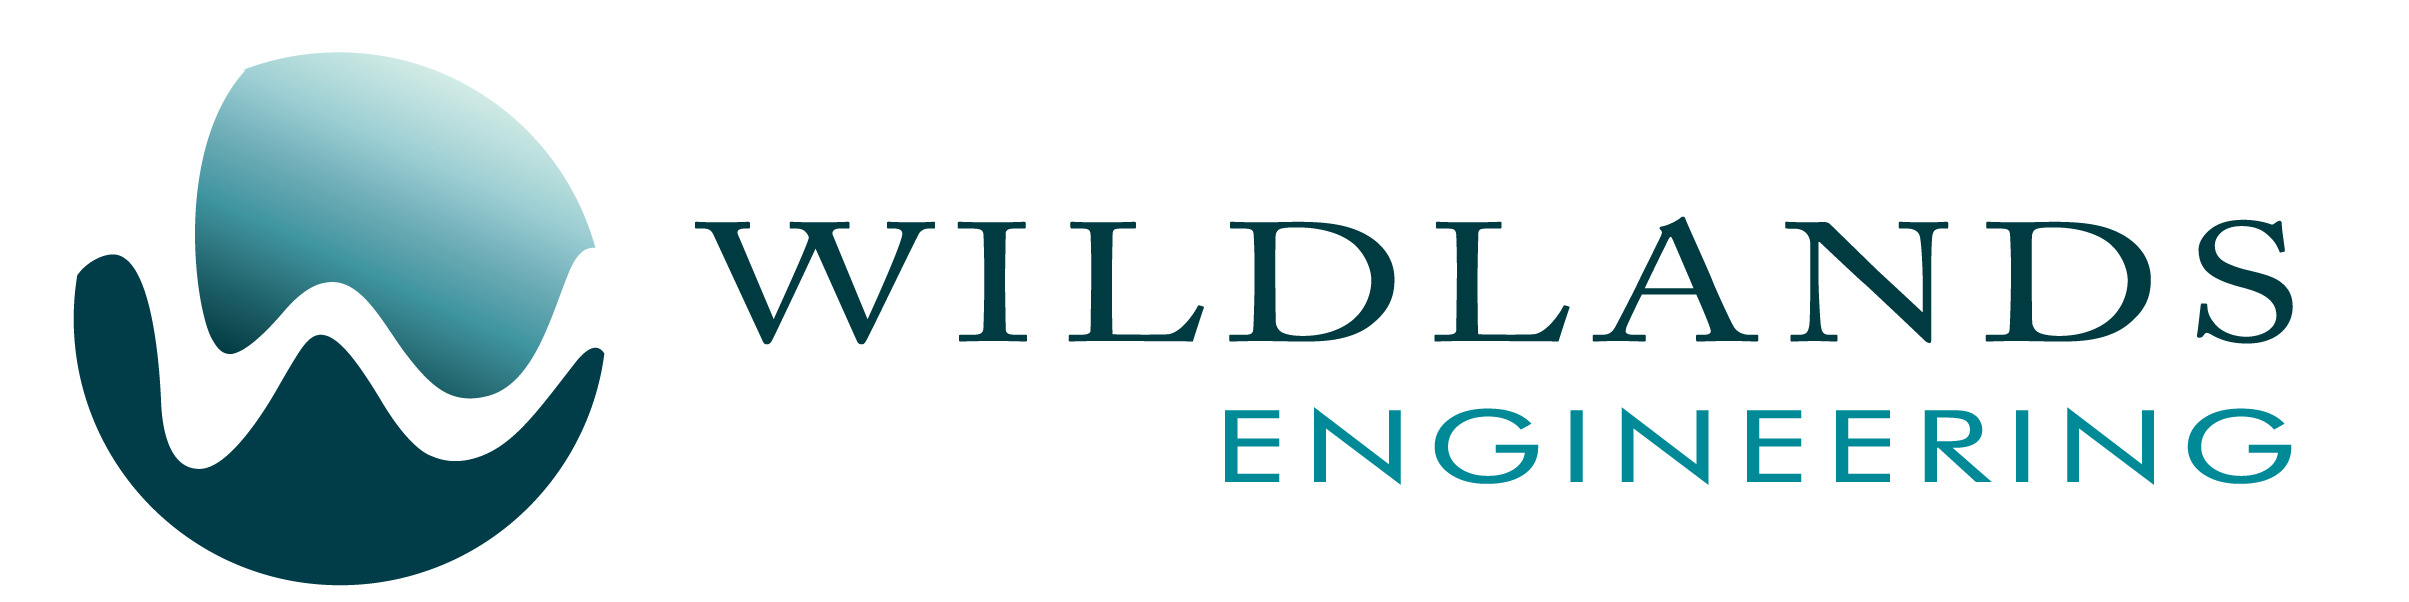 Wildlands Engineering Seeks AutoCAD Technician